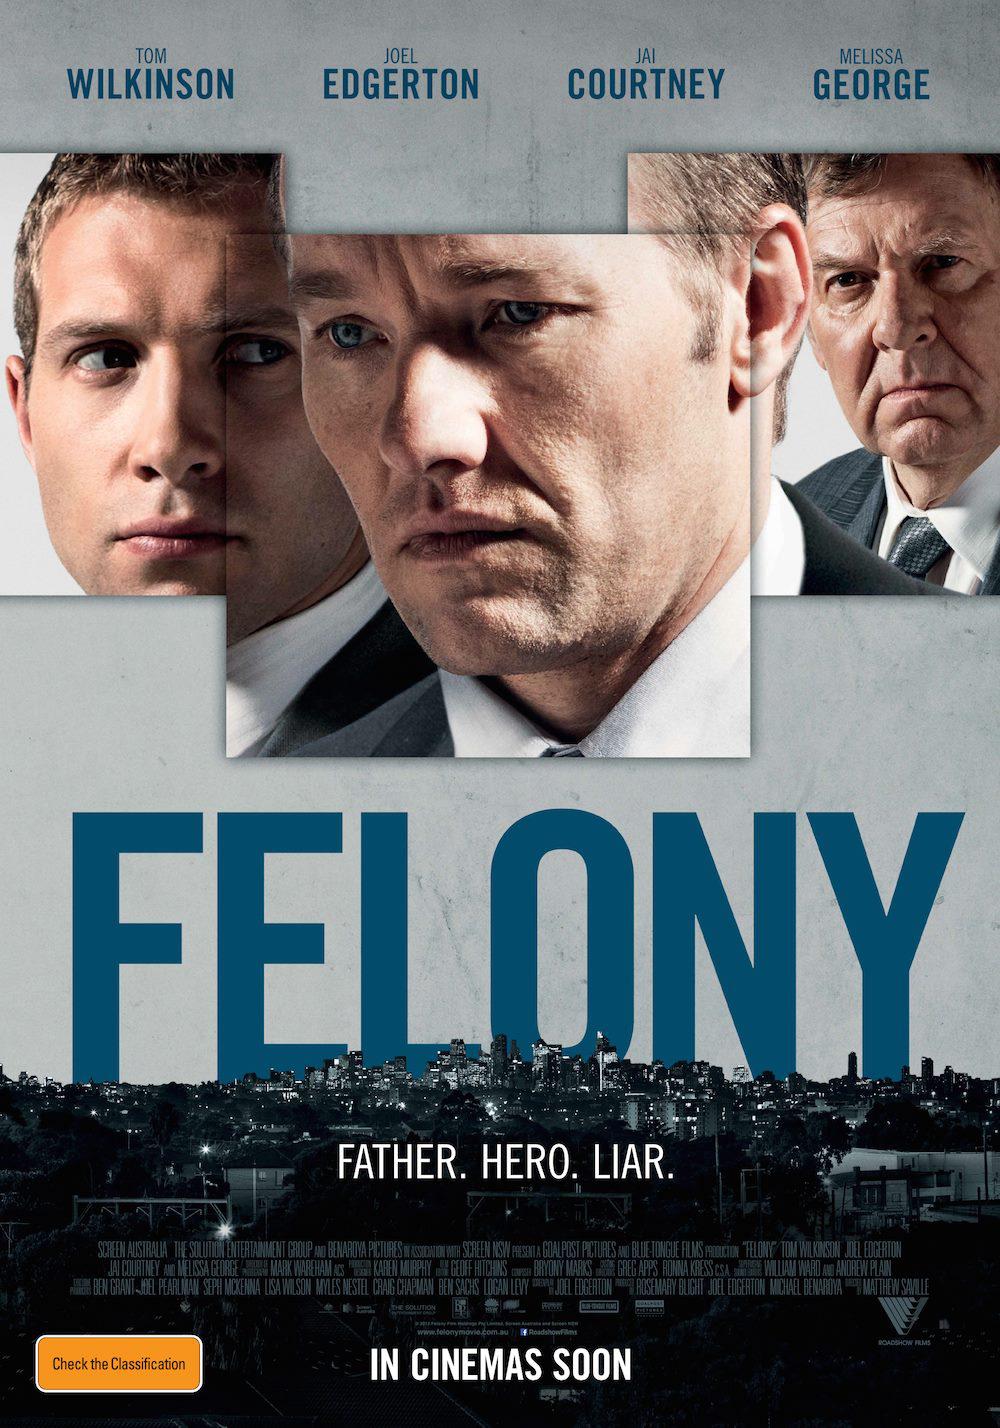 Felony Movie Review